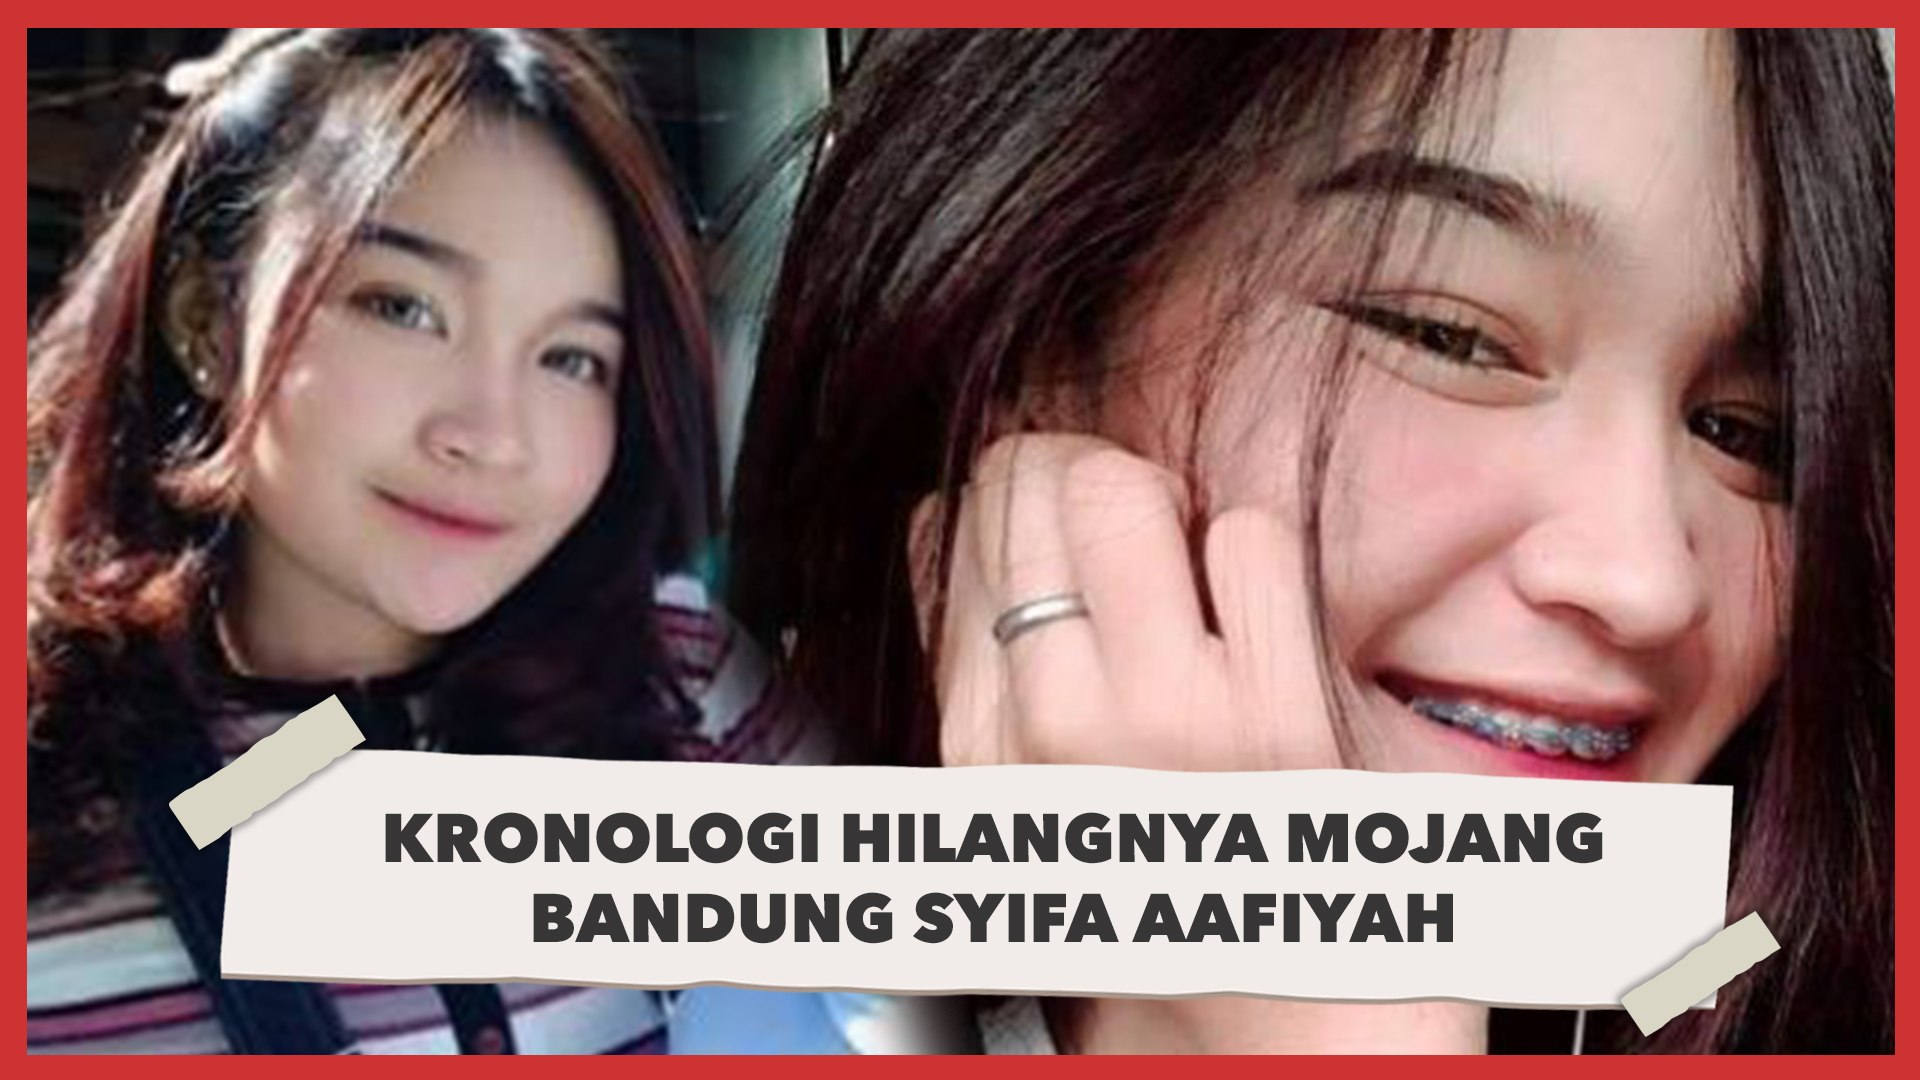 Kronologi Hilangnya Syifa  Aafiyah Mojang Bandung yang Jadi Misteri